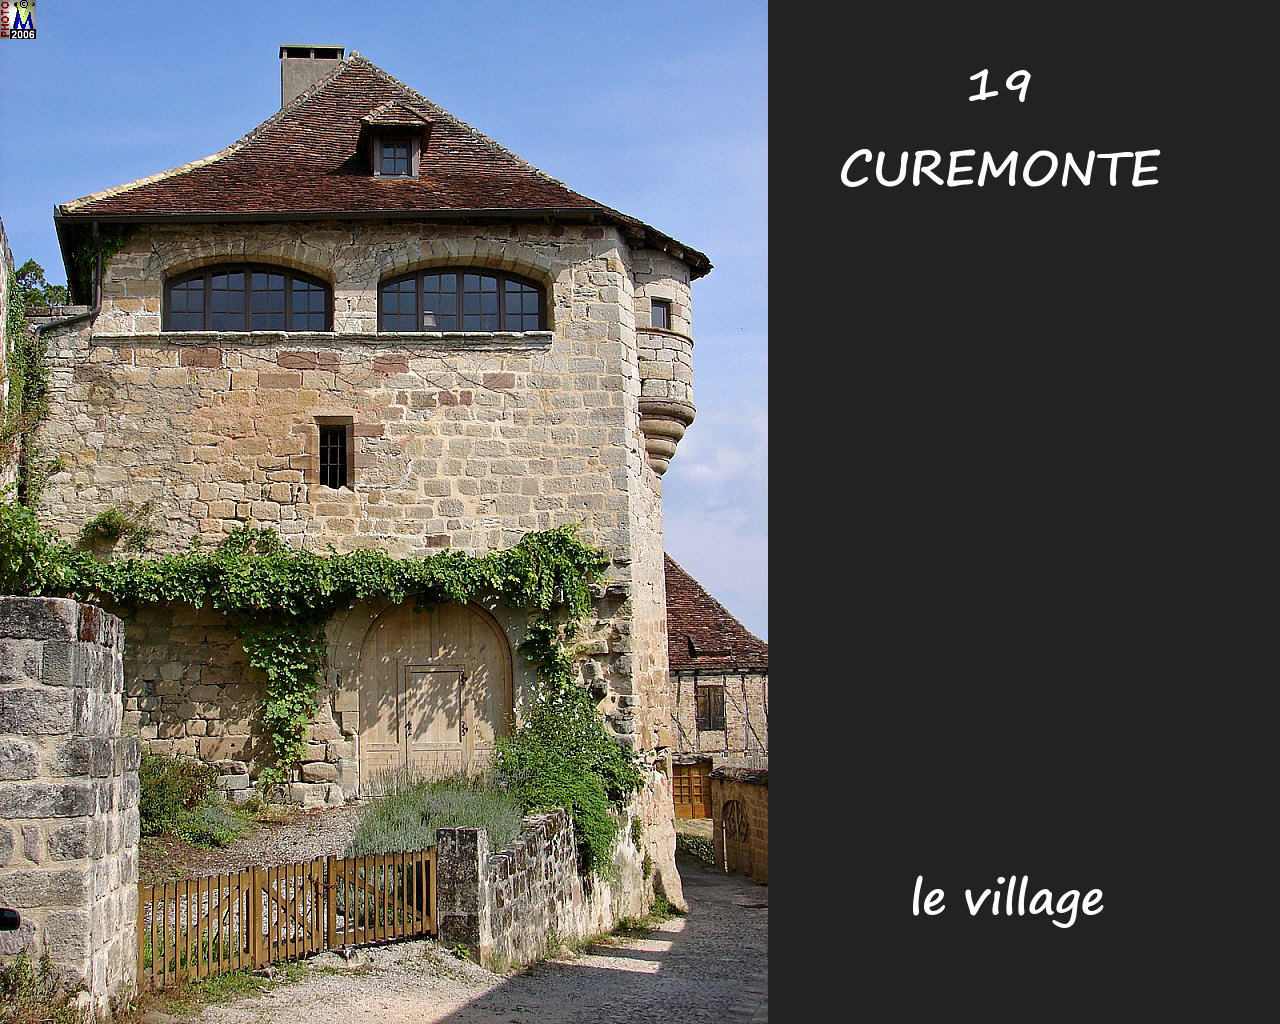 19CUREMONTE_village_130.jpg